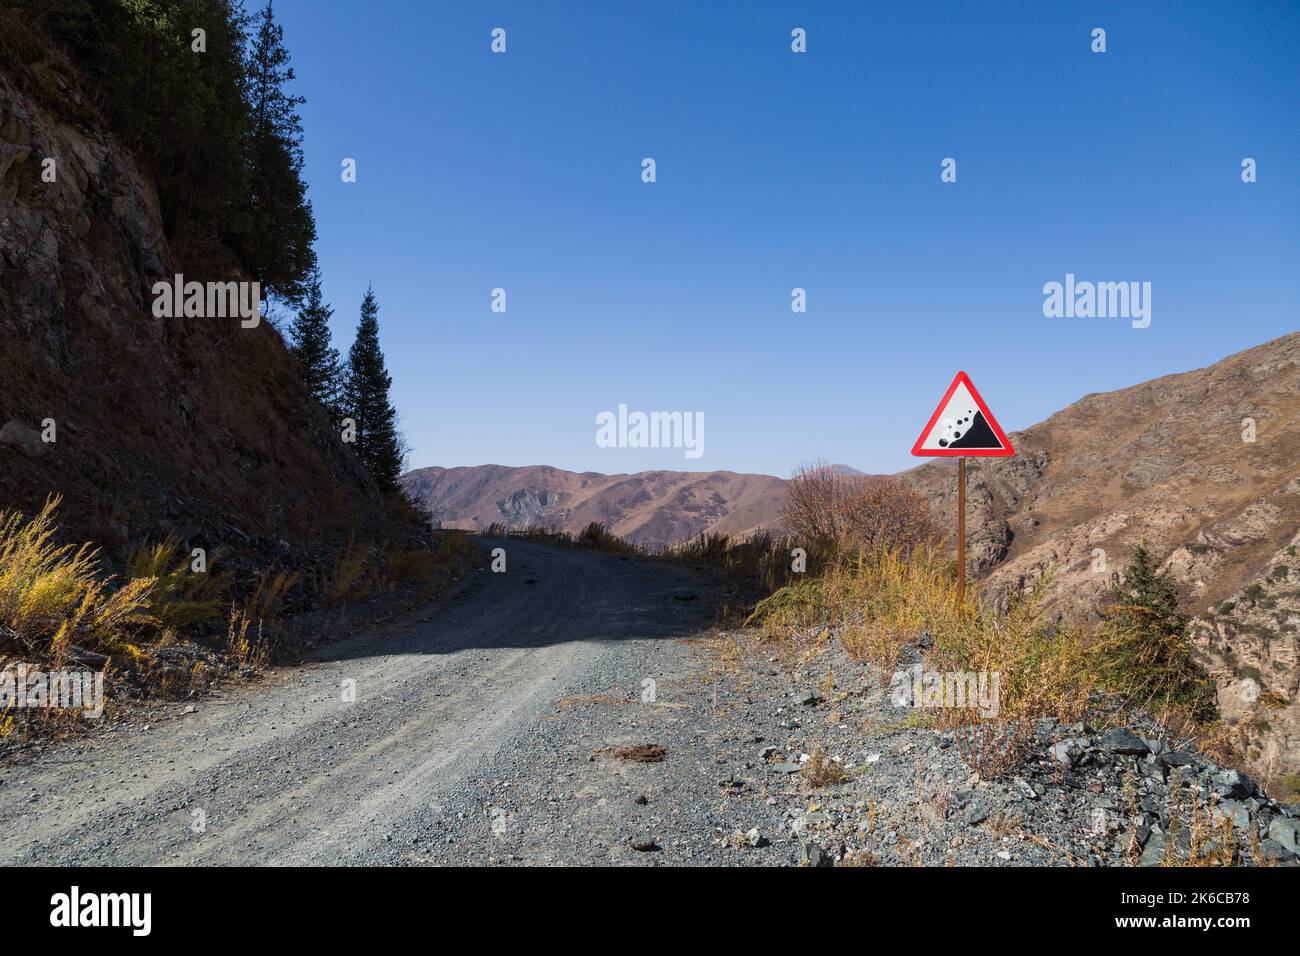 Señal de carretera en una montaña peligrosa Foto de stock